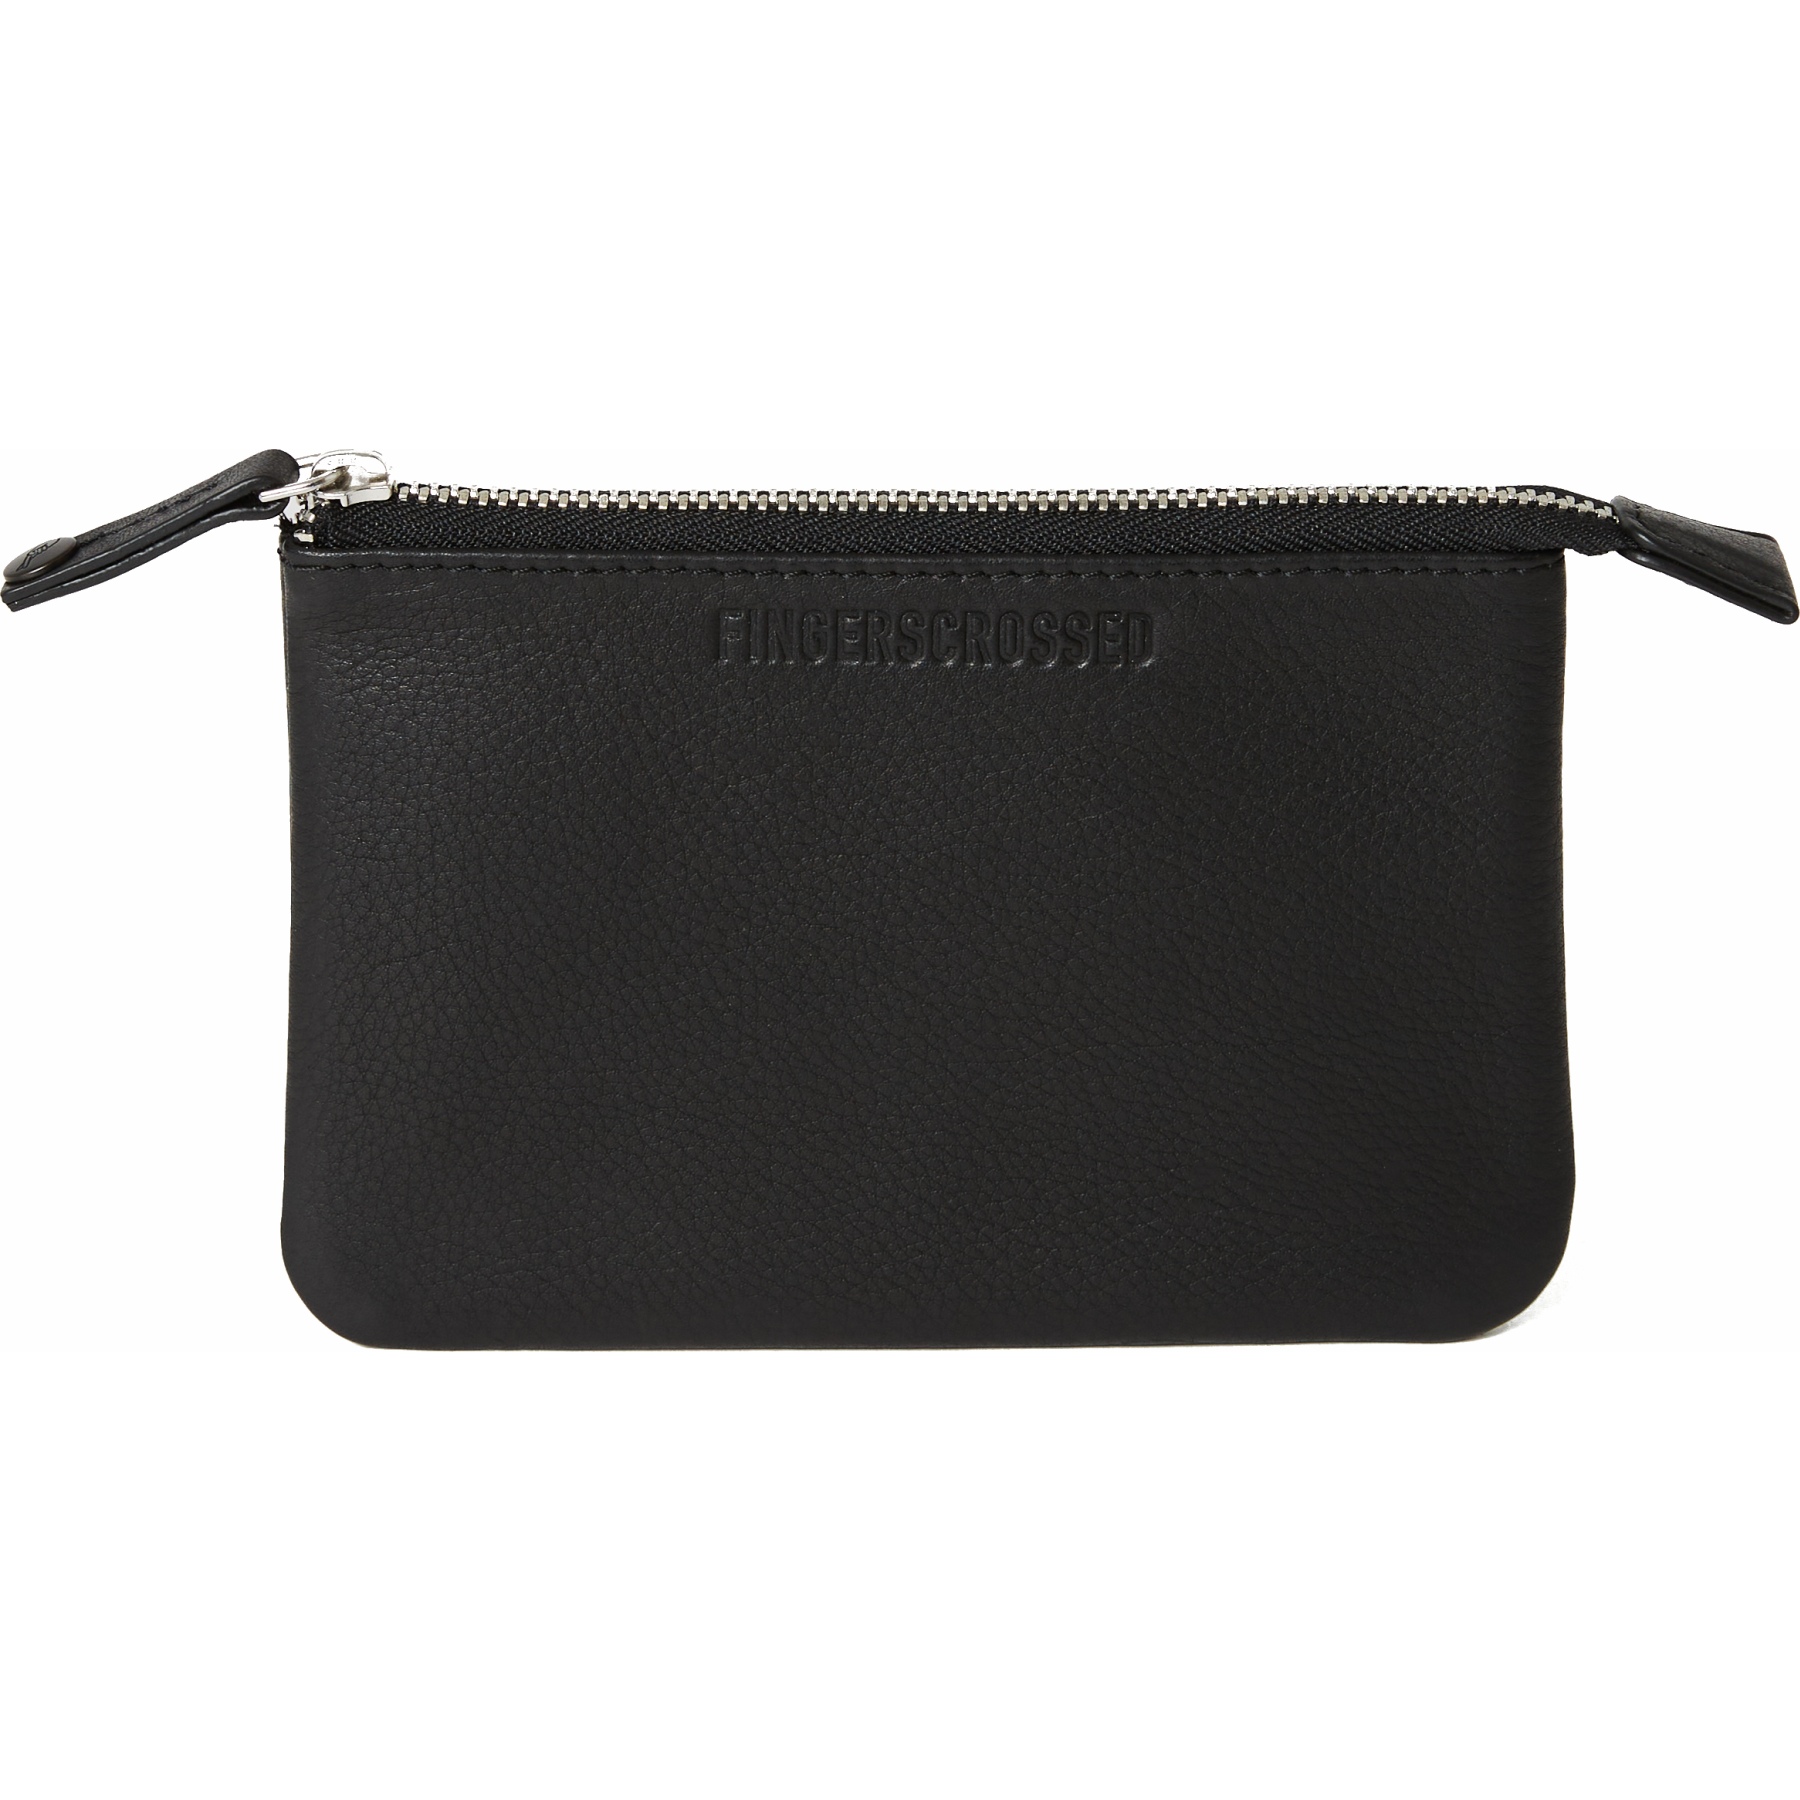 Produktbild von FINGERSCROSSED Leather Pouch Brieftasche - Big